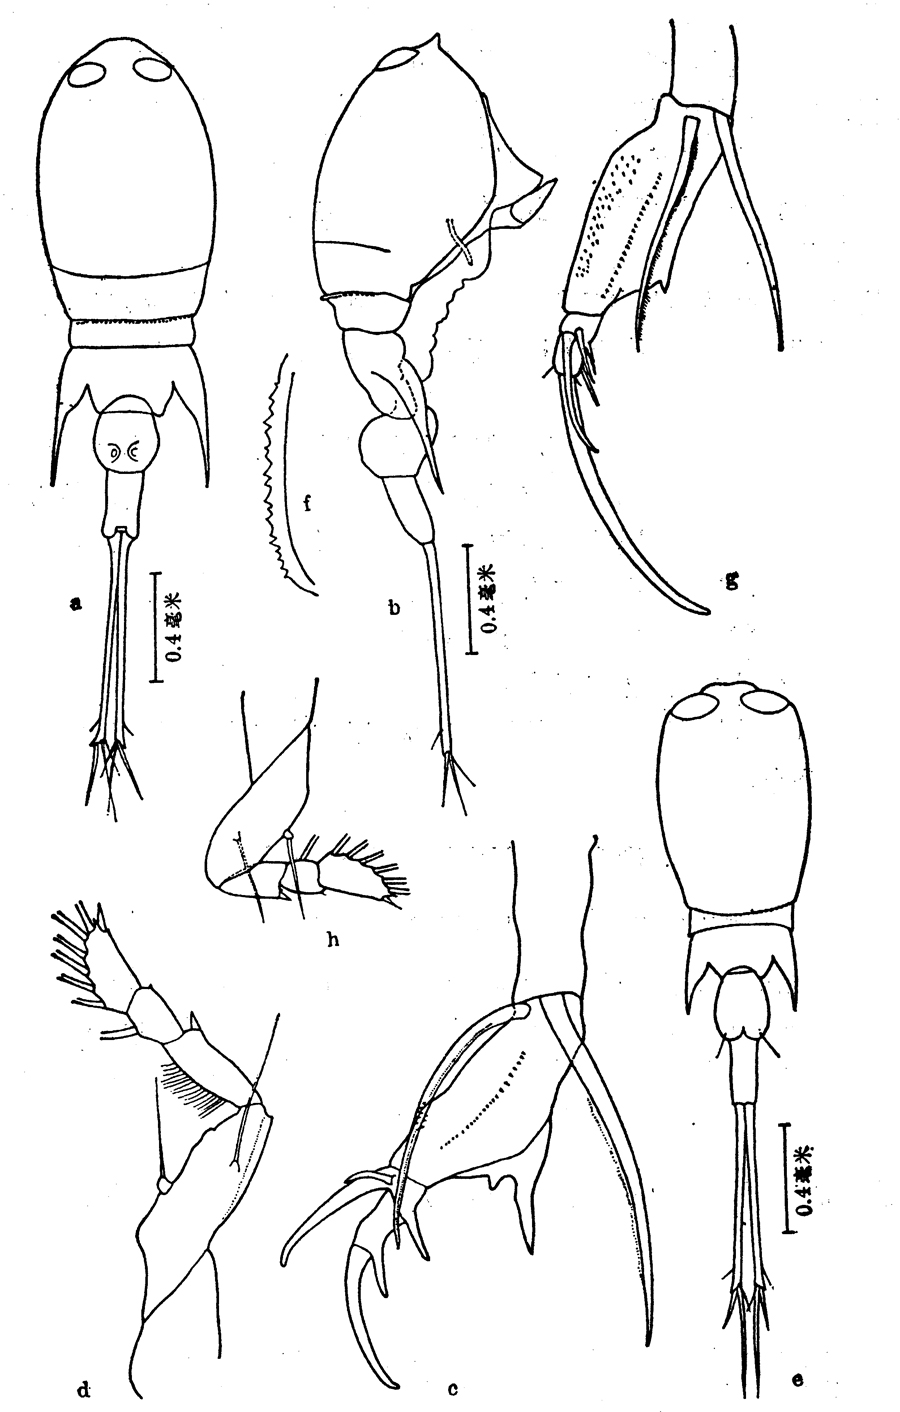 Espce Corycaeus (Urocorycaeus) longistylis - Planche 8 de figures morphologiques